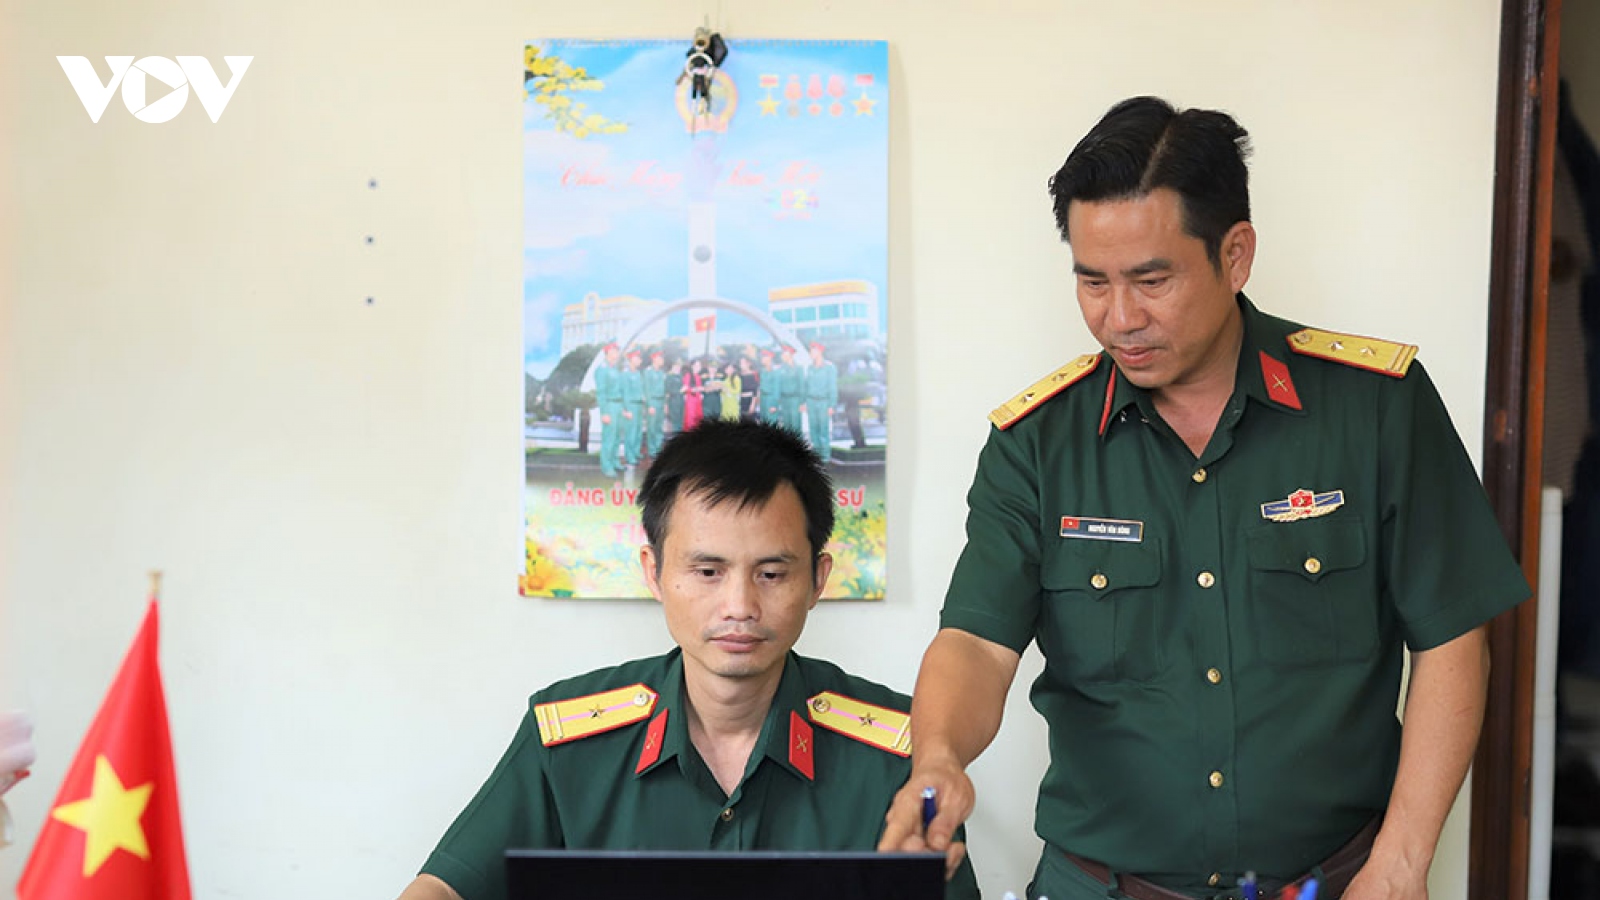 Người sỹ quan đam mê công nghệ thông tin ở Đắk Lắk